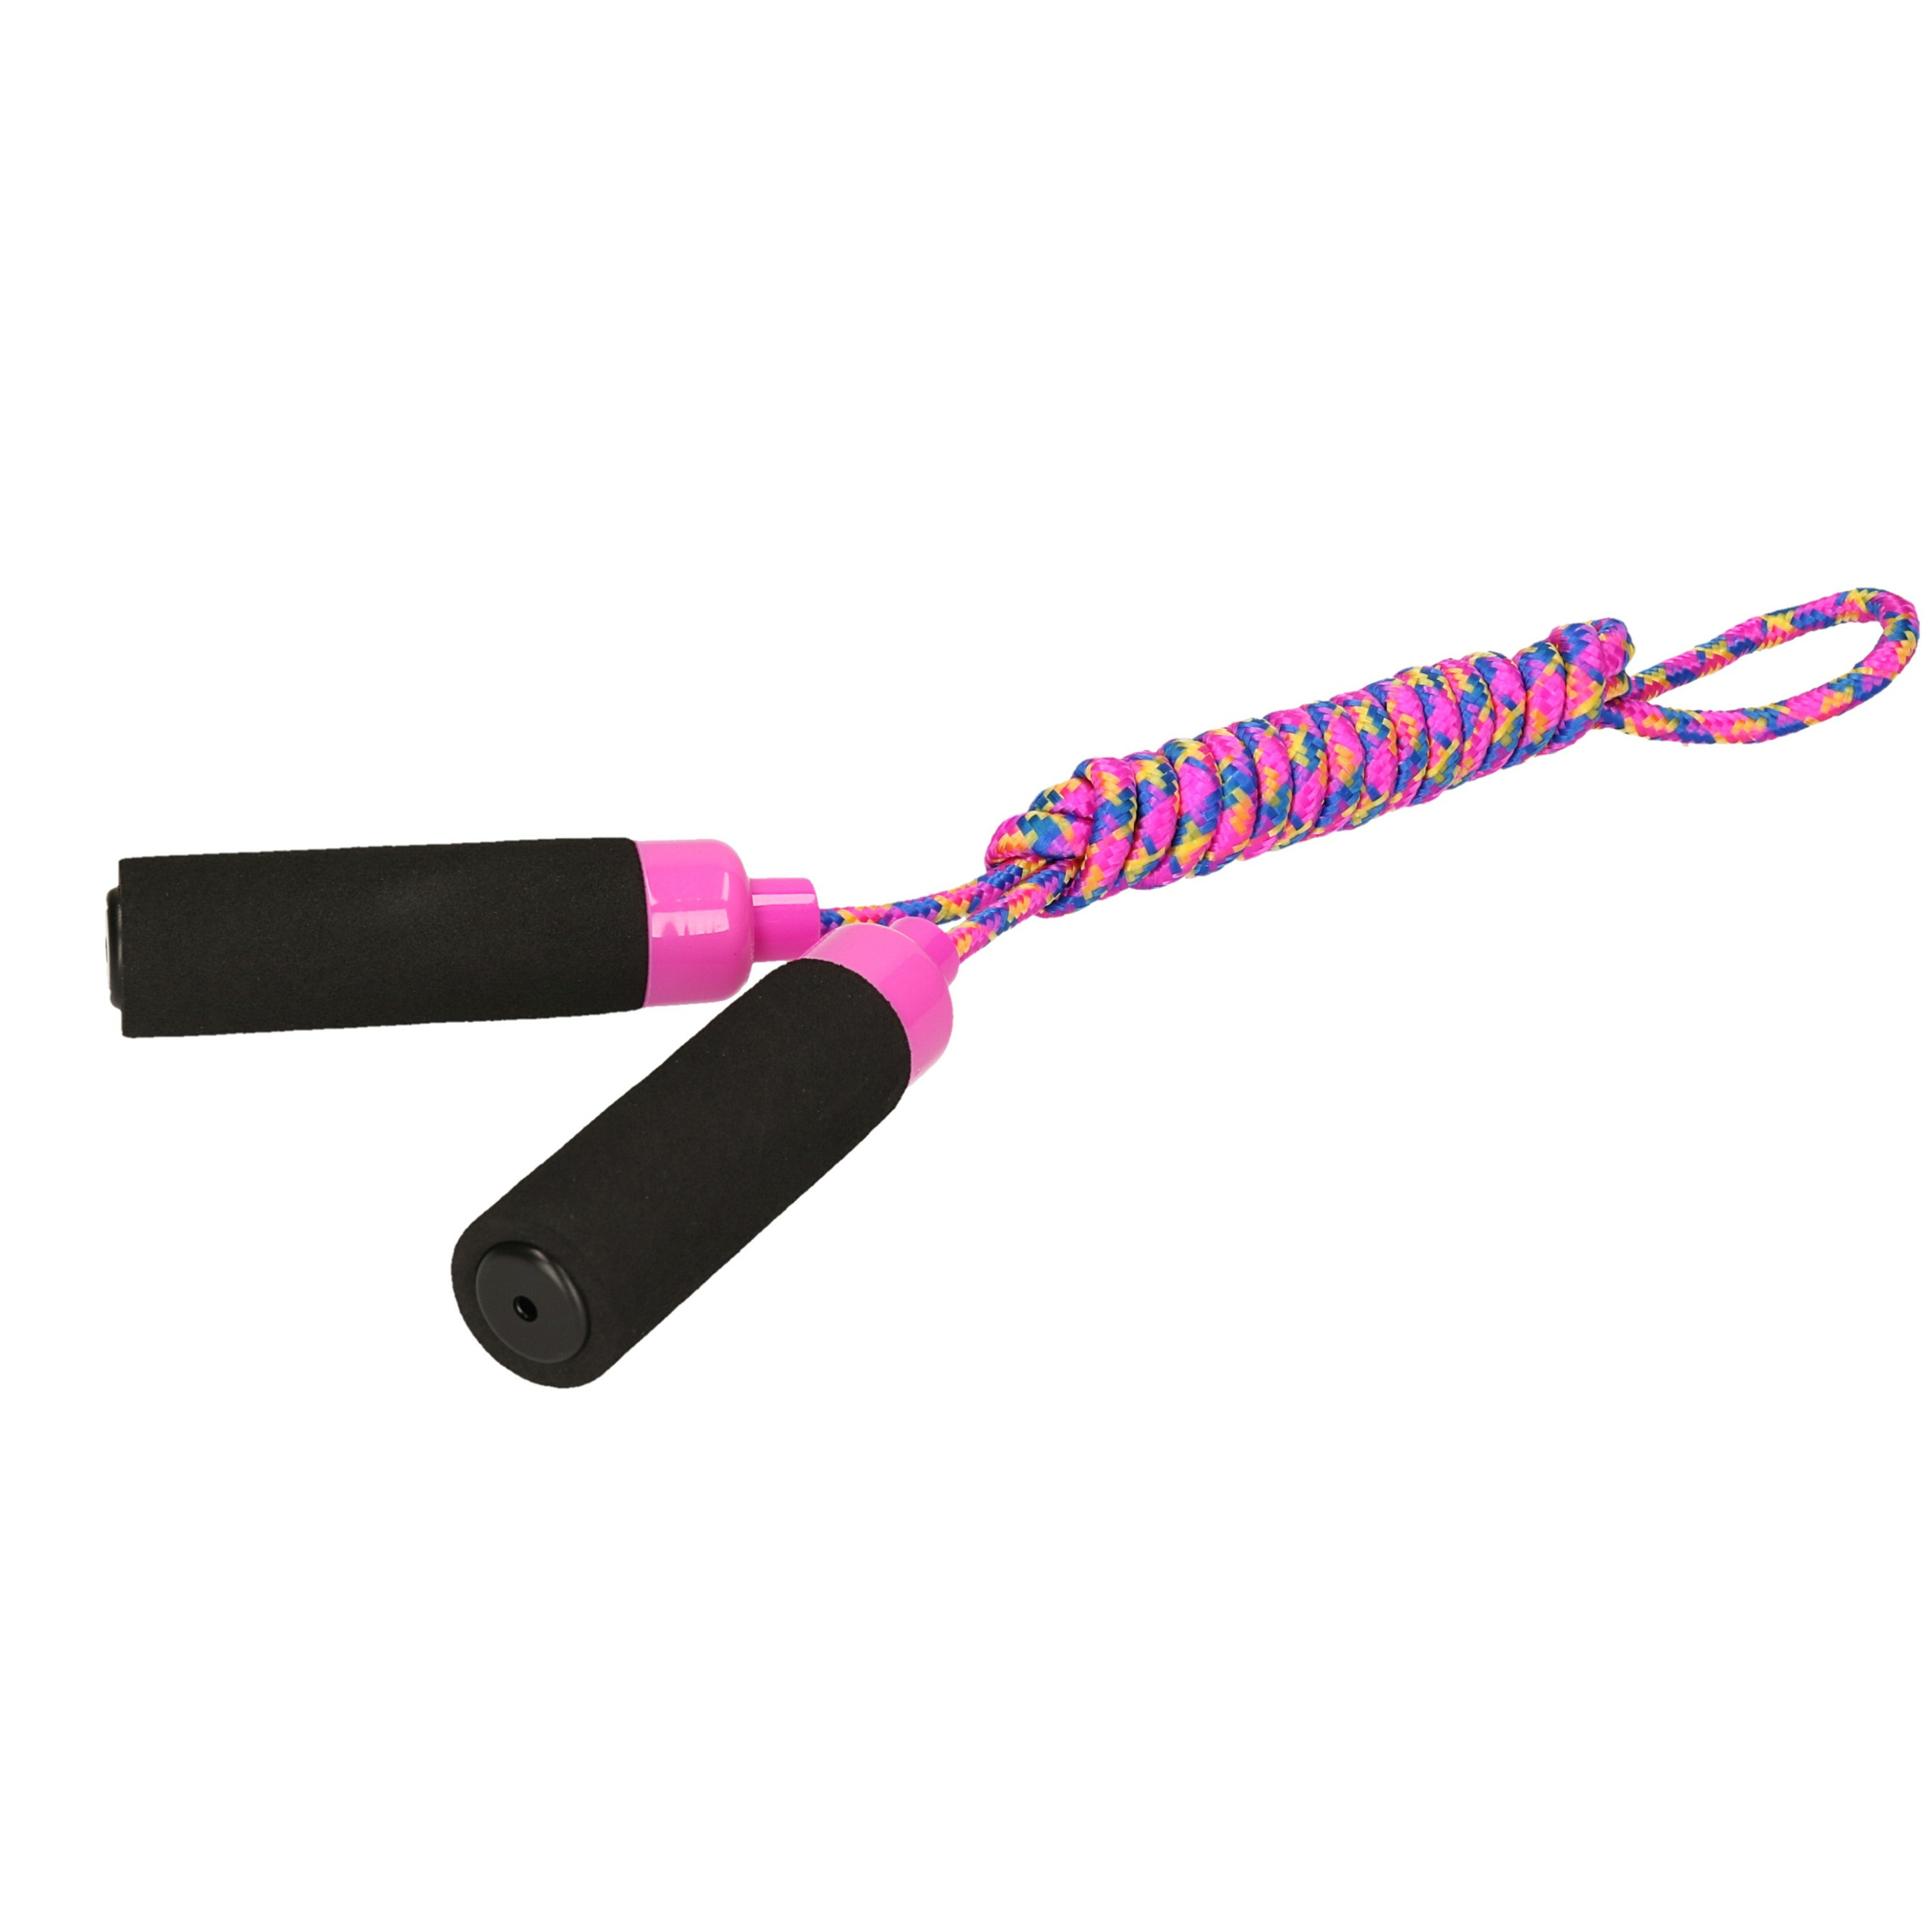 Kids Fun Springtouw speelgoed met Foam handvat - fuchsia roze touw - 210 cm - buitenspeelgoed -